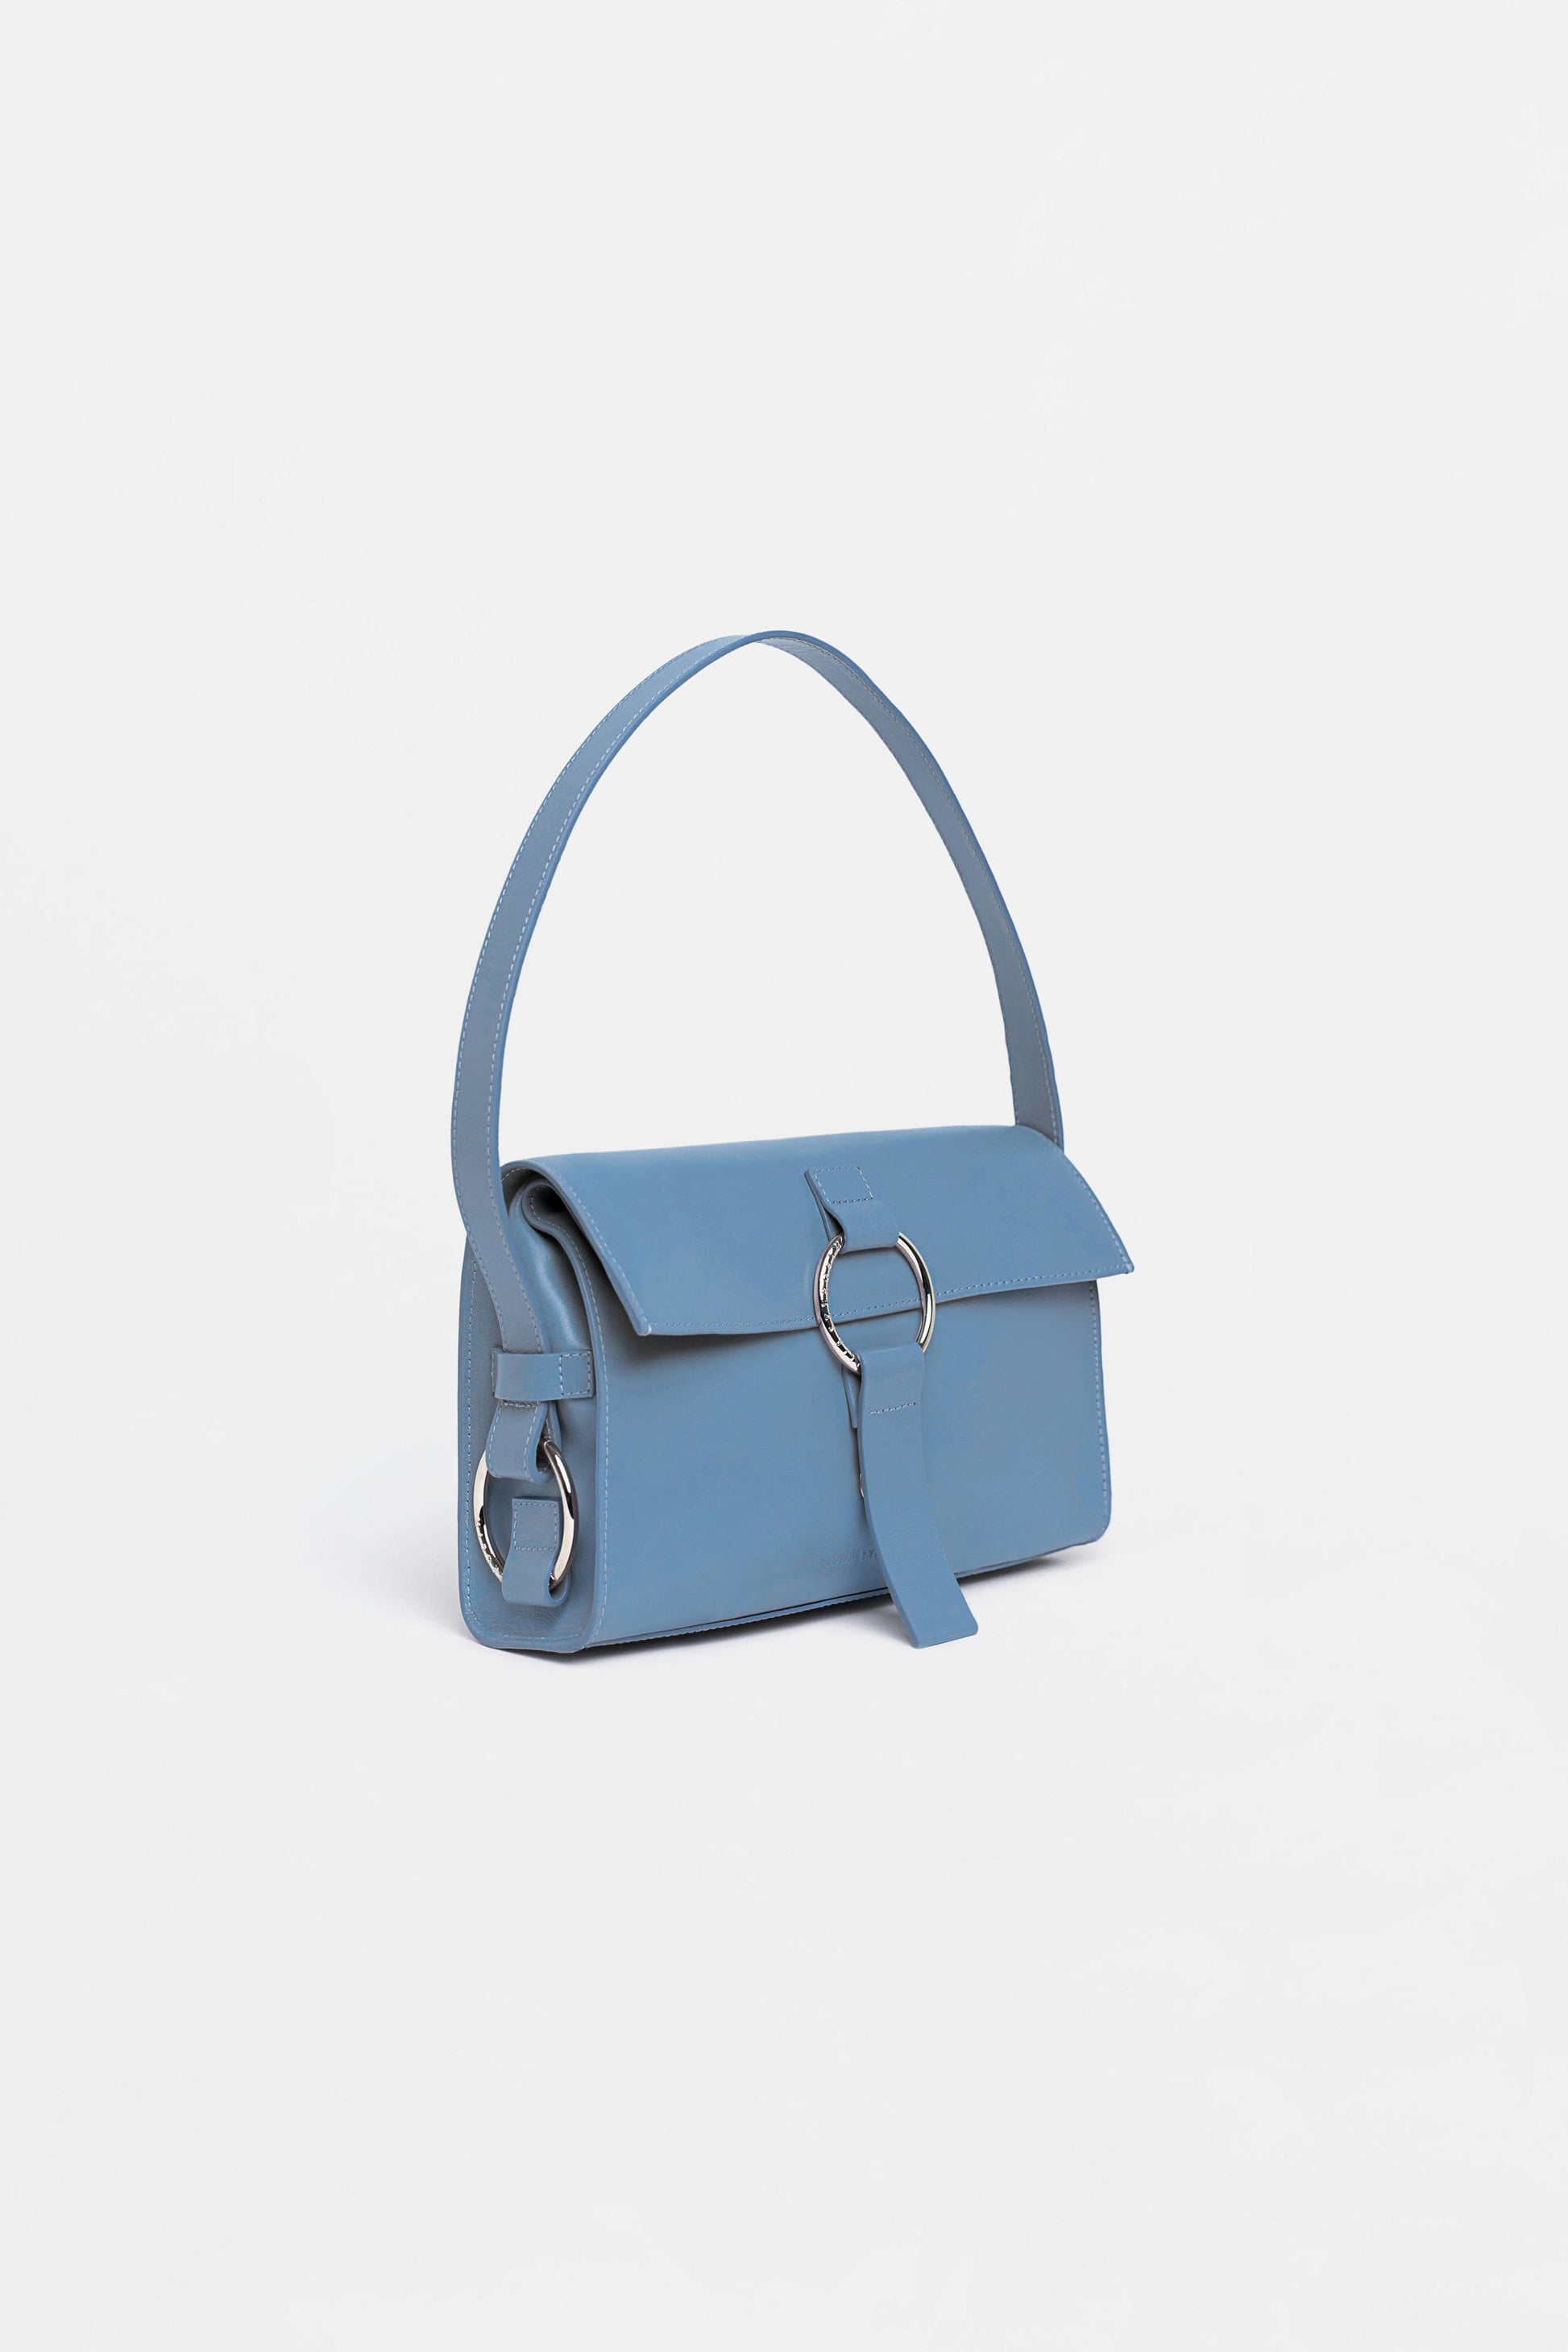 The SHOULDER BAG Azul Blue - JULIA SKERGETH